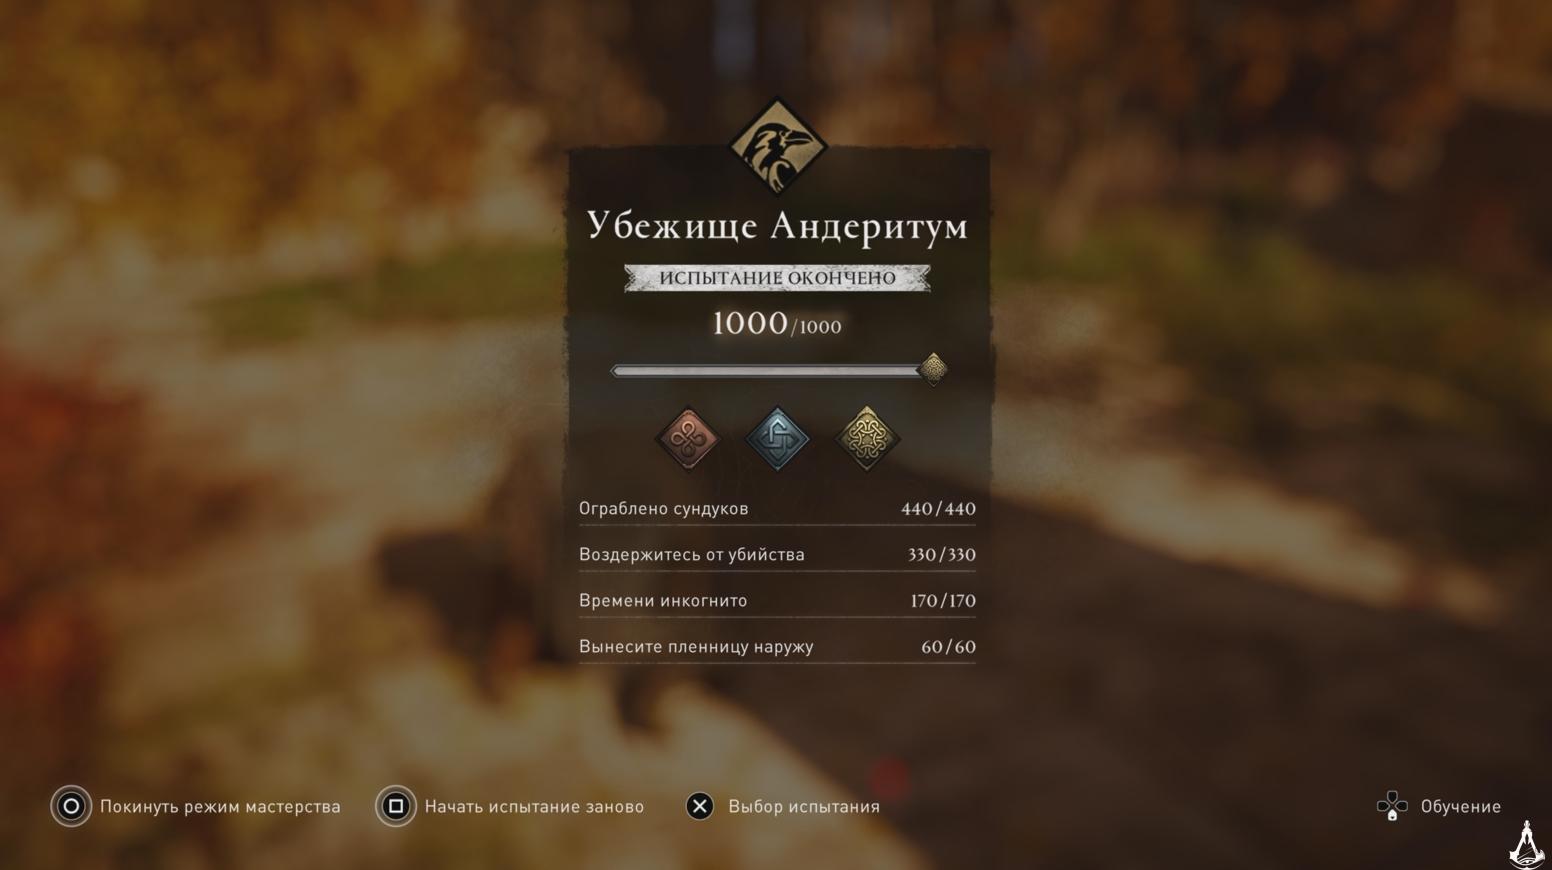 Assassin's Creed Valhalla Убежище Андеритум прохождение Испытание мастерства